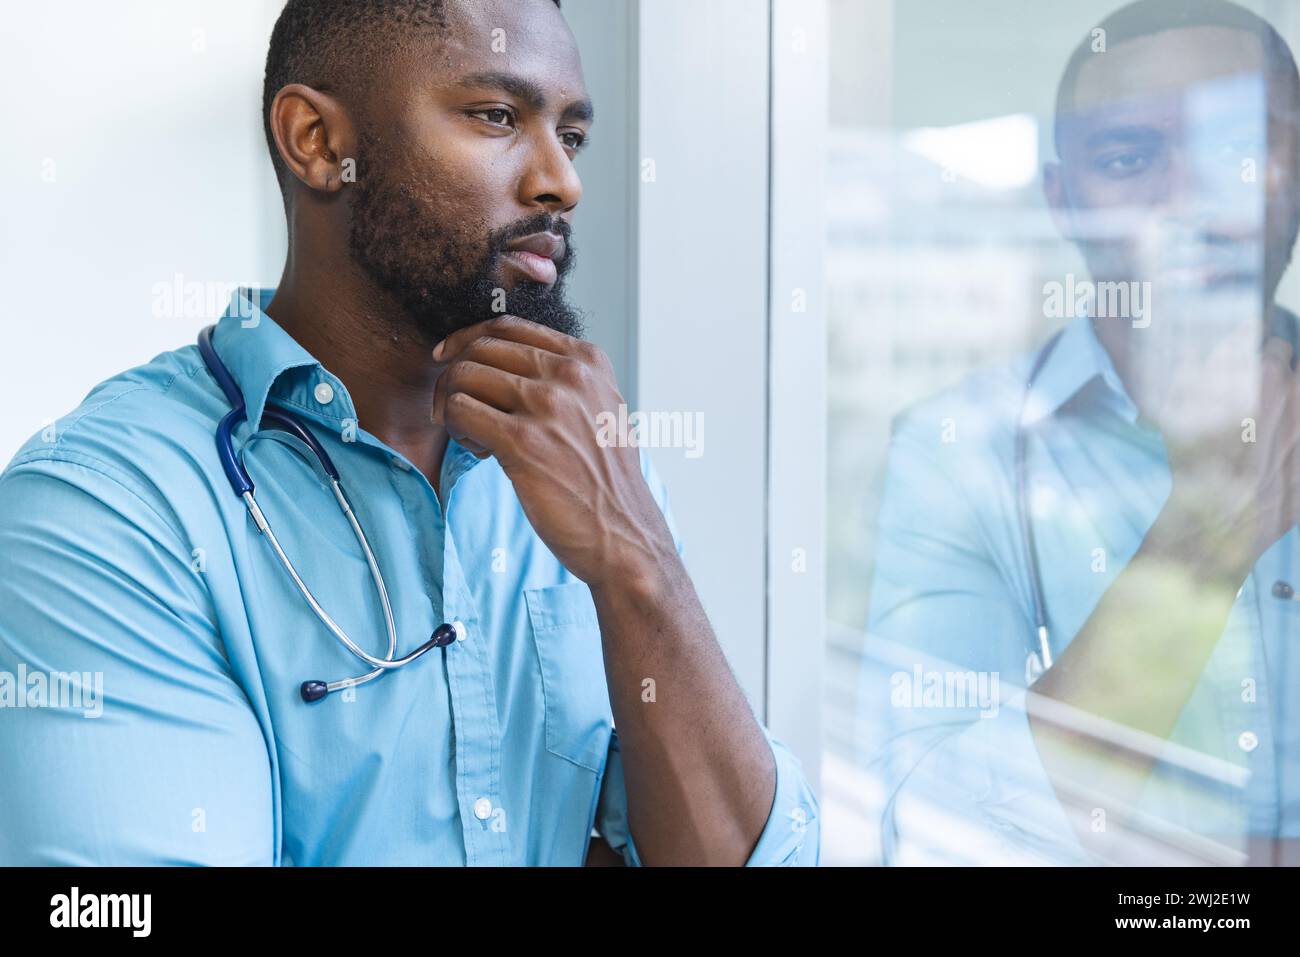 Pensativo médico masculino afroamericano con camisa azul mirando a través de la ventana en la habitación del hospital Foto de stock